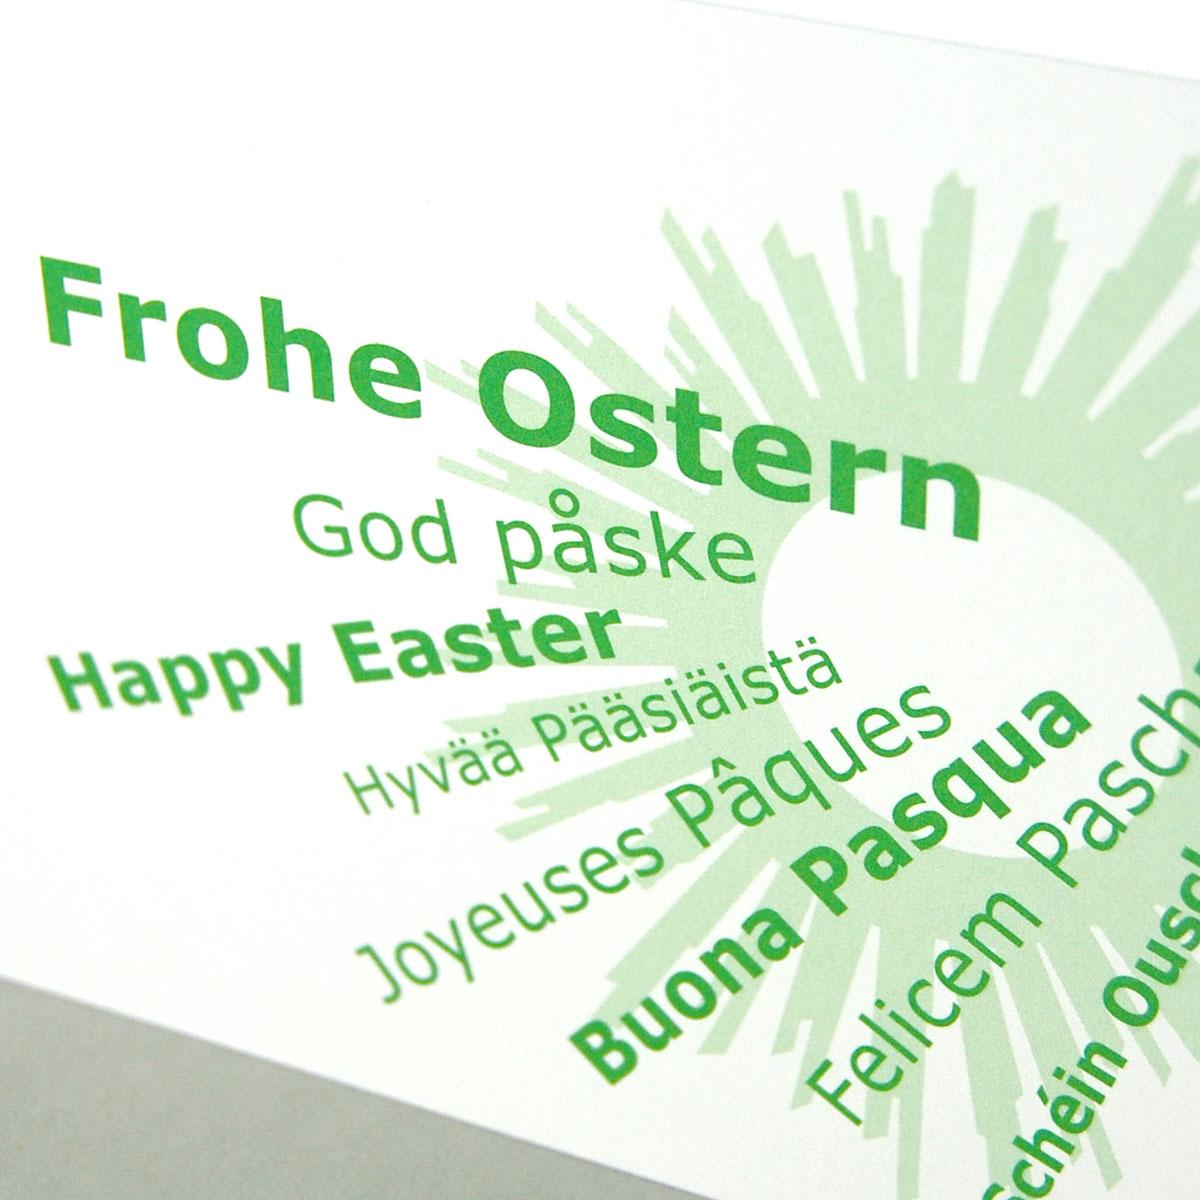 internationale Ostergrüße: Frohe Ostern, God påske, Happy Easter